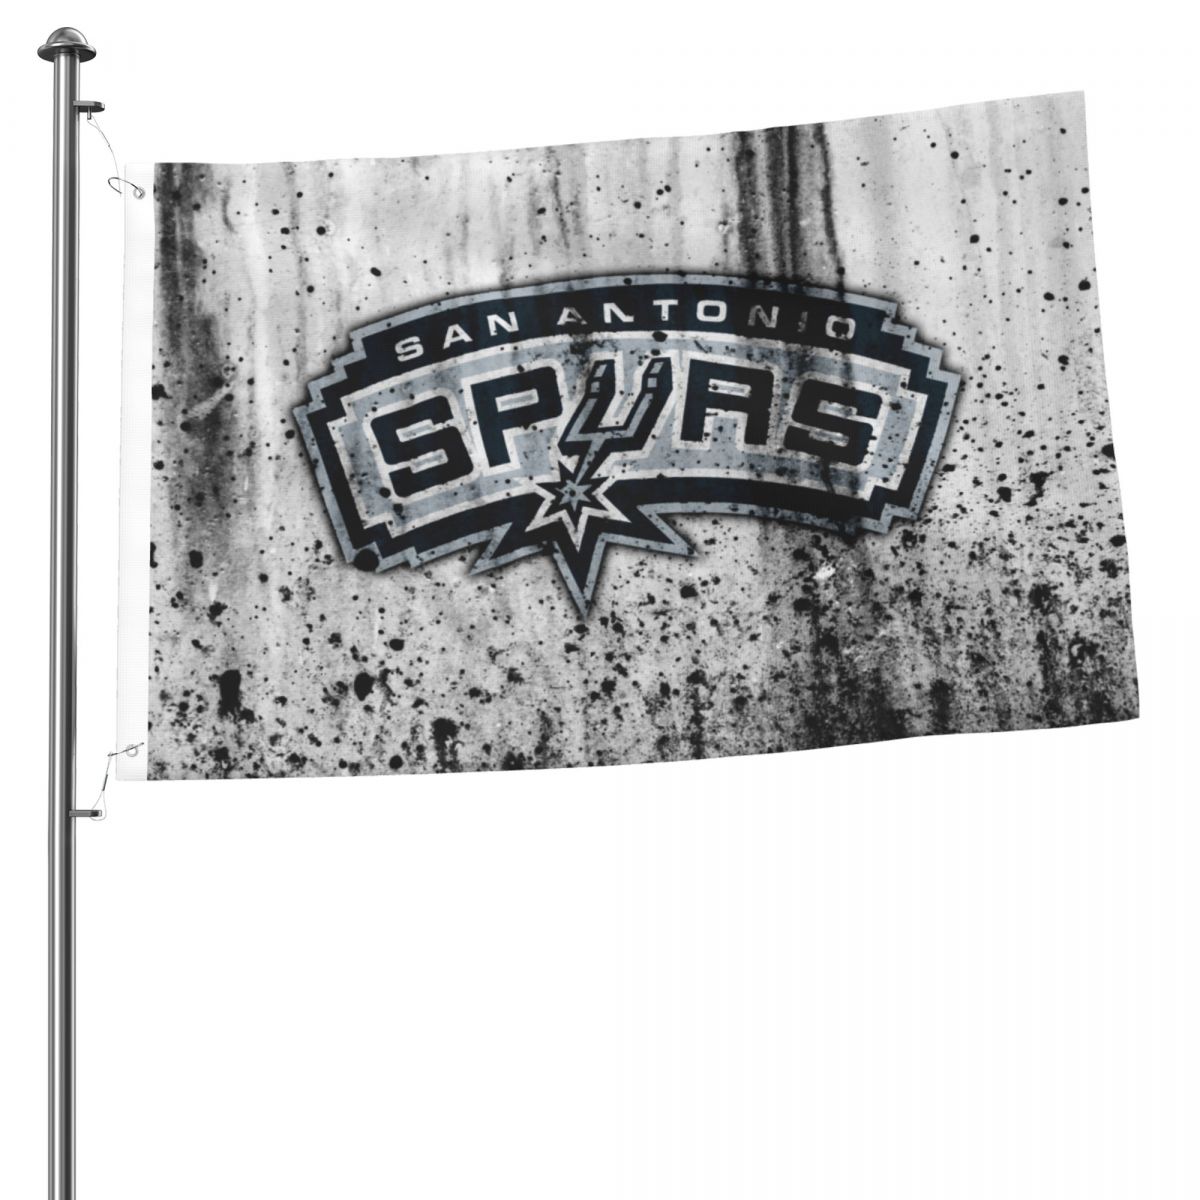 San Antonio Spurs NBA Basketball 2x3 FT UV Resistant Flag